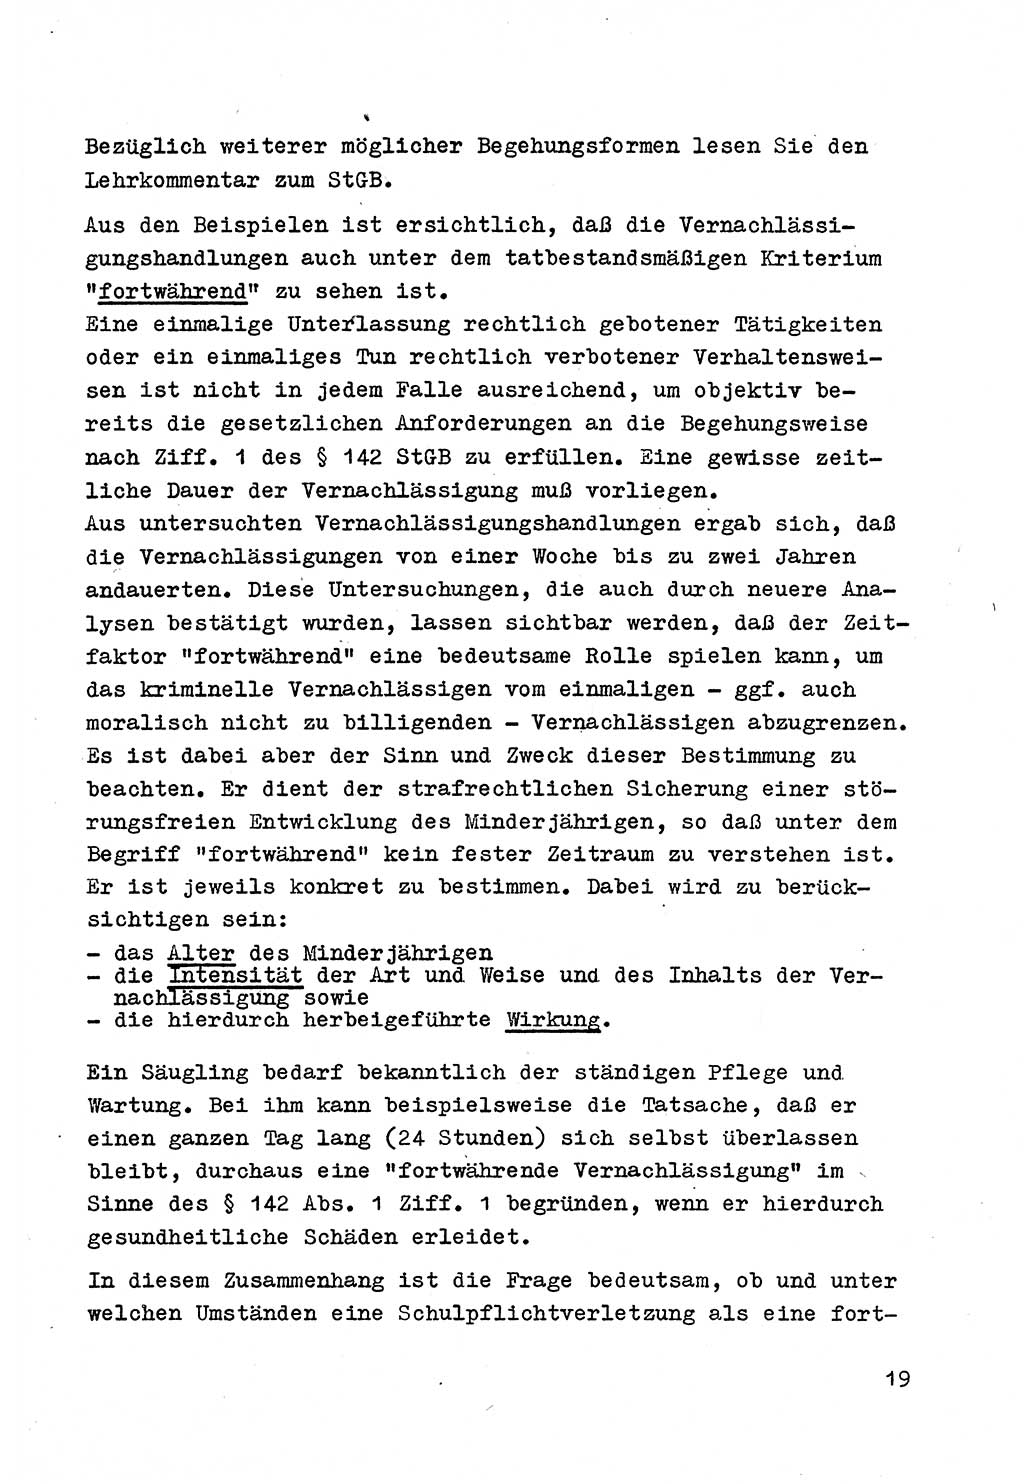 Strafrecht der DDR (Deutsche Demokratische Republik), Besonderer Teil, Lehrmaterial, Heft 4 1969, Seite 19 (Strafr. DDR BT Lehrmat. H. 4 1969, S. 19)